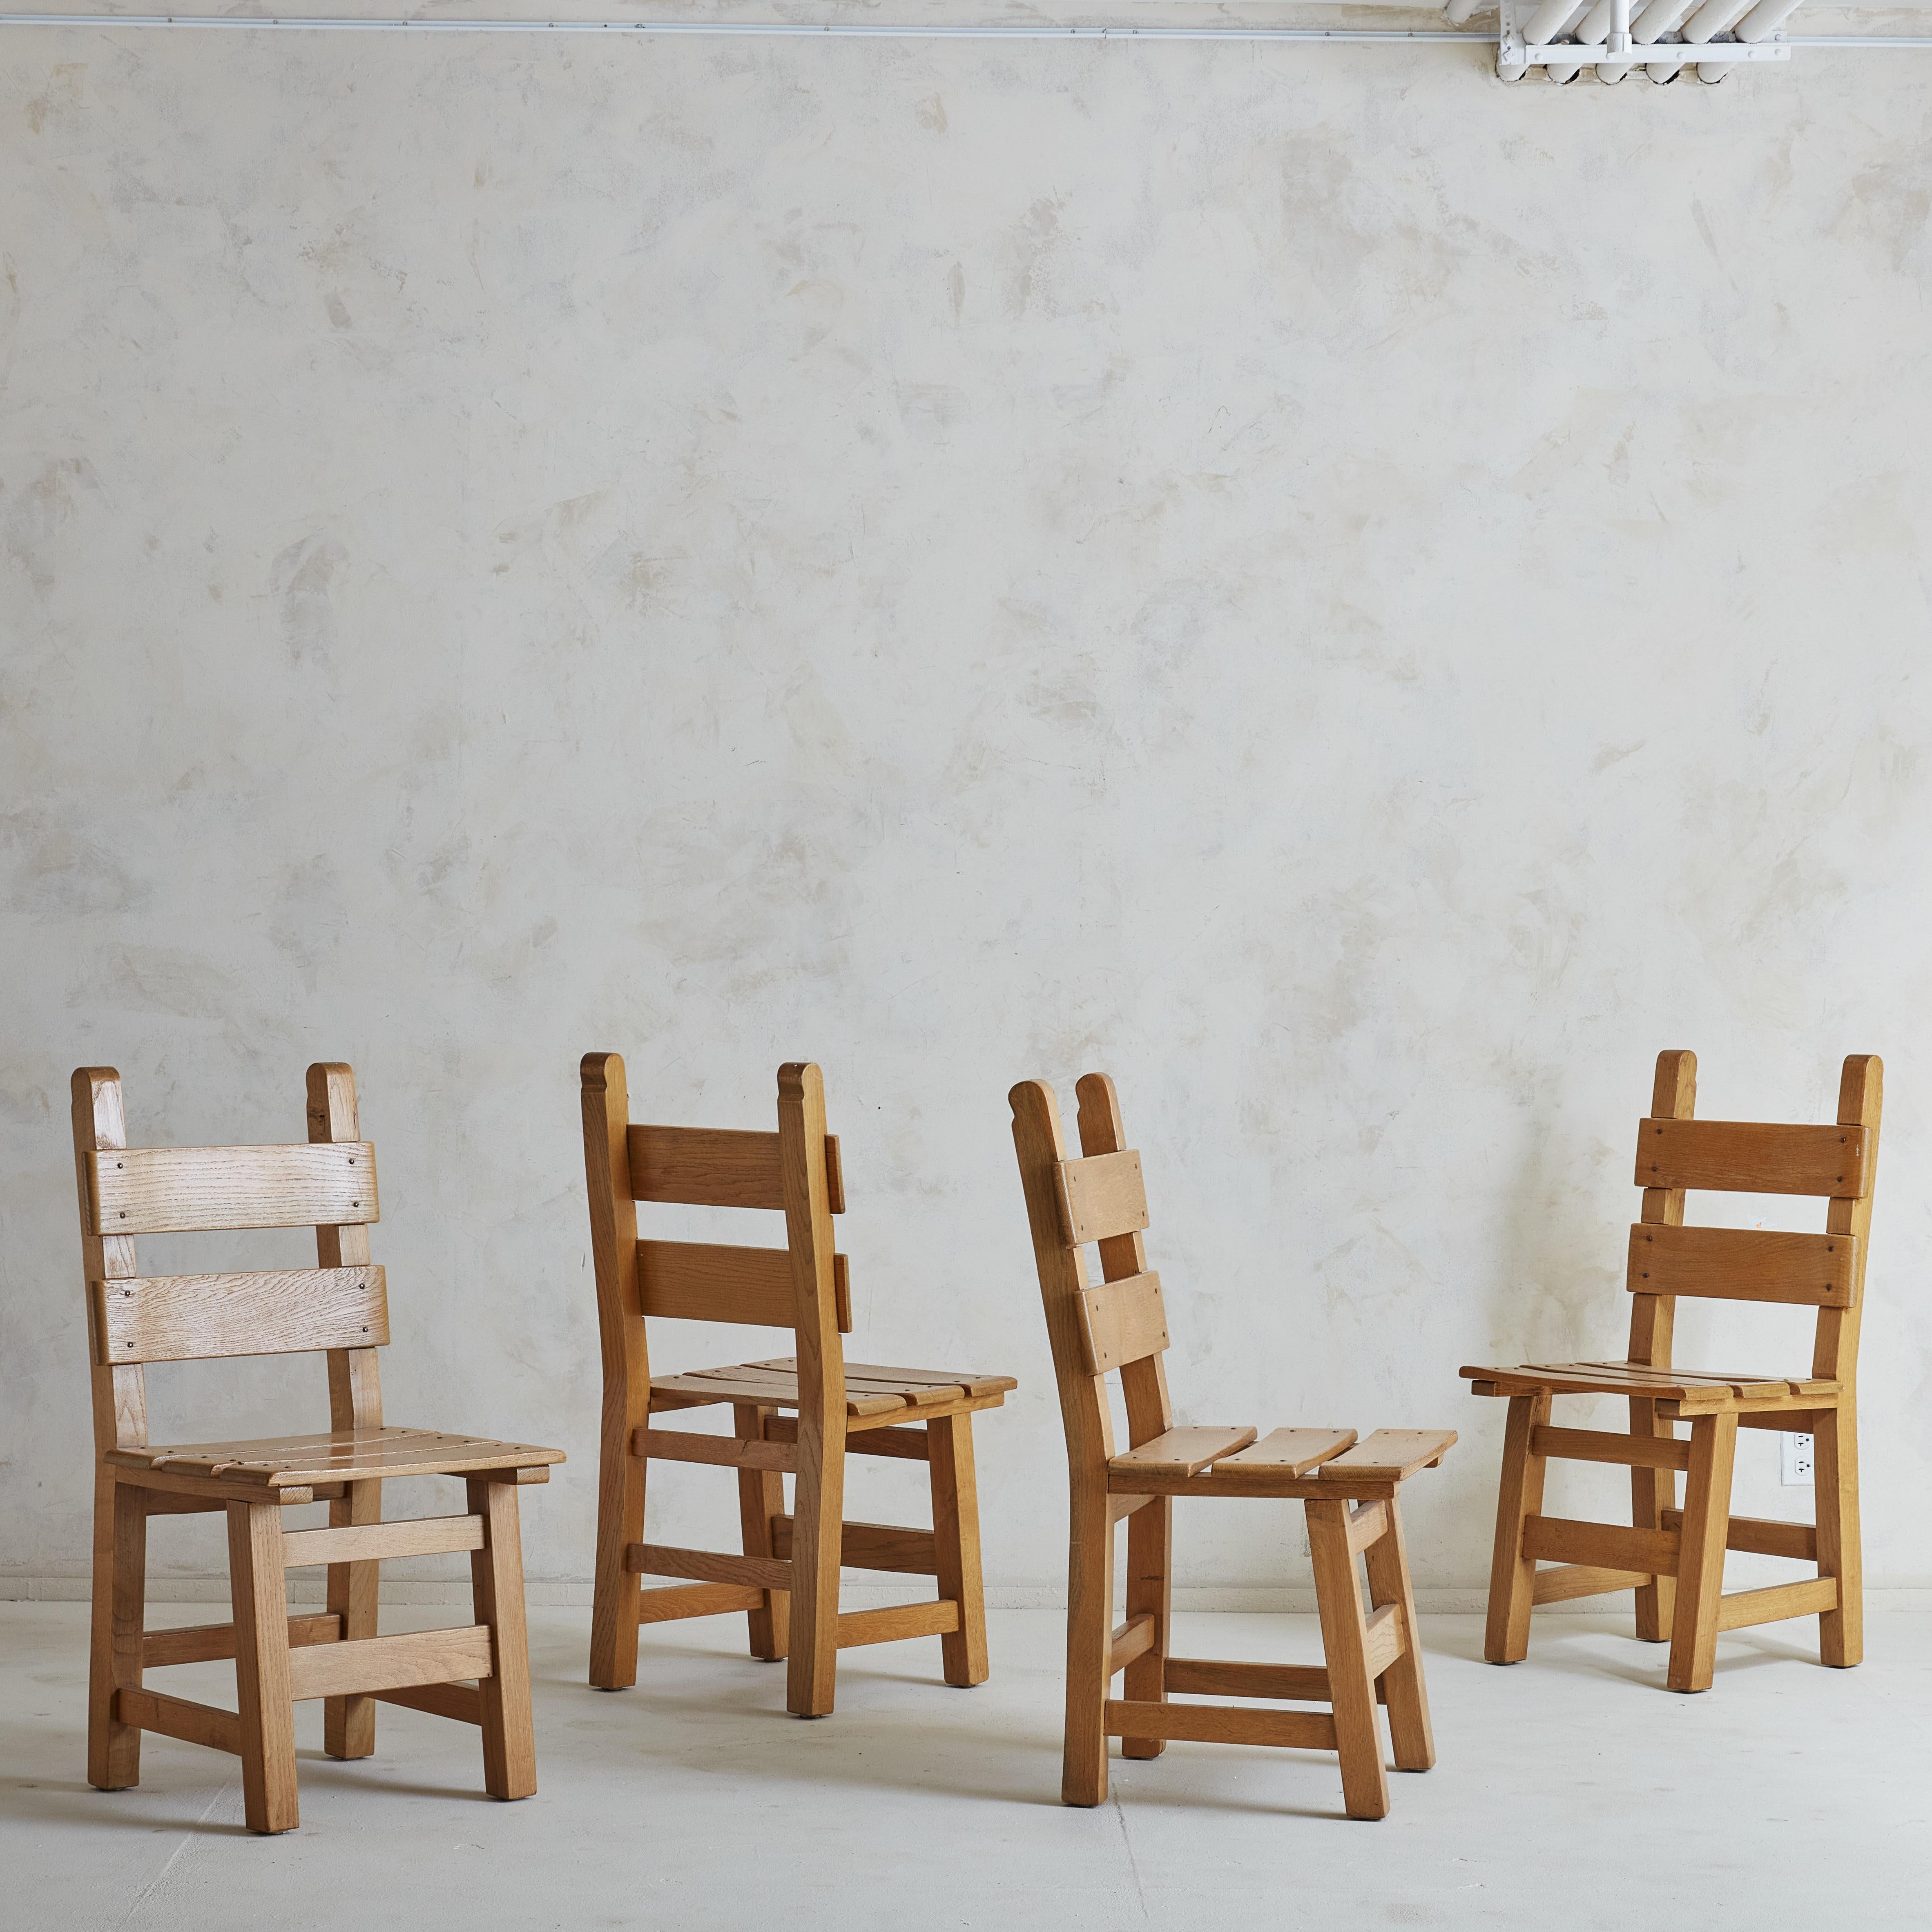 Ein Satz von 4 dänischen Esszimmerstühlen aus Kiefernholz. Eine Mischung aus brutalistischer Inspiration und Bergmöbeln; wir finden sie sowohl extrem funktional als auch charmant. Die Alterung des Kiefernholzes verleiht dem Set eine Tiefe und